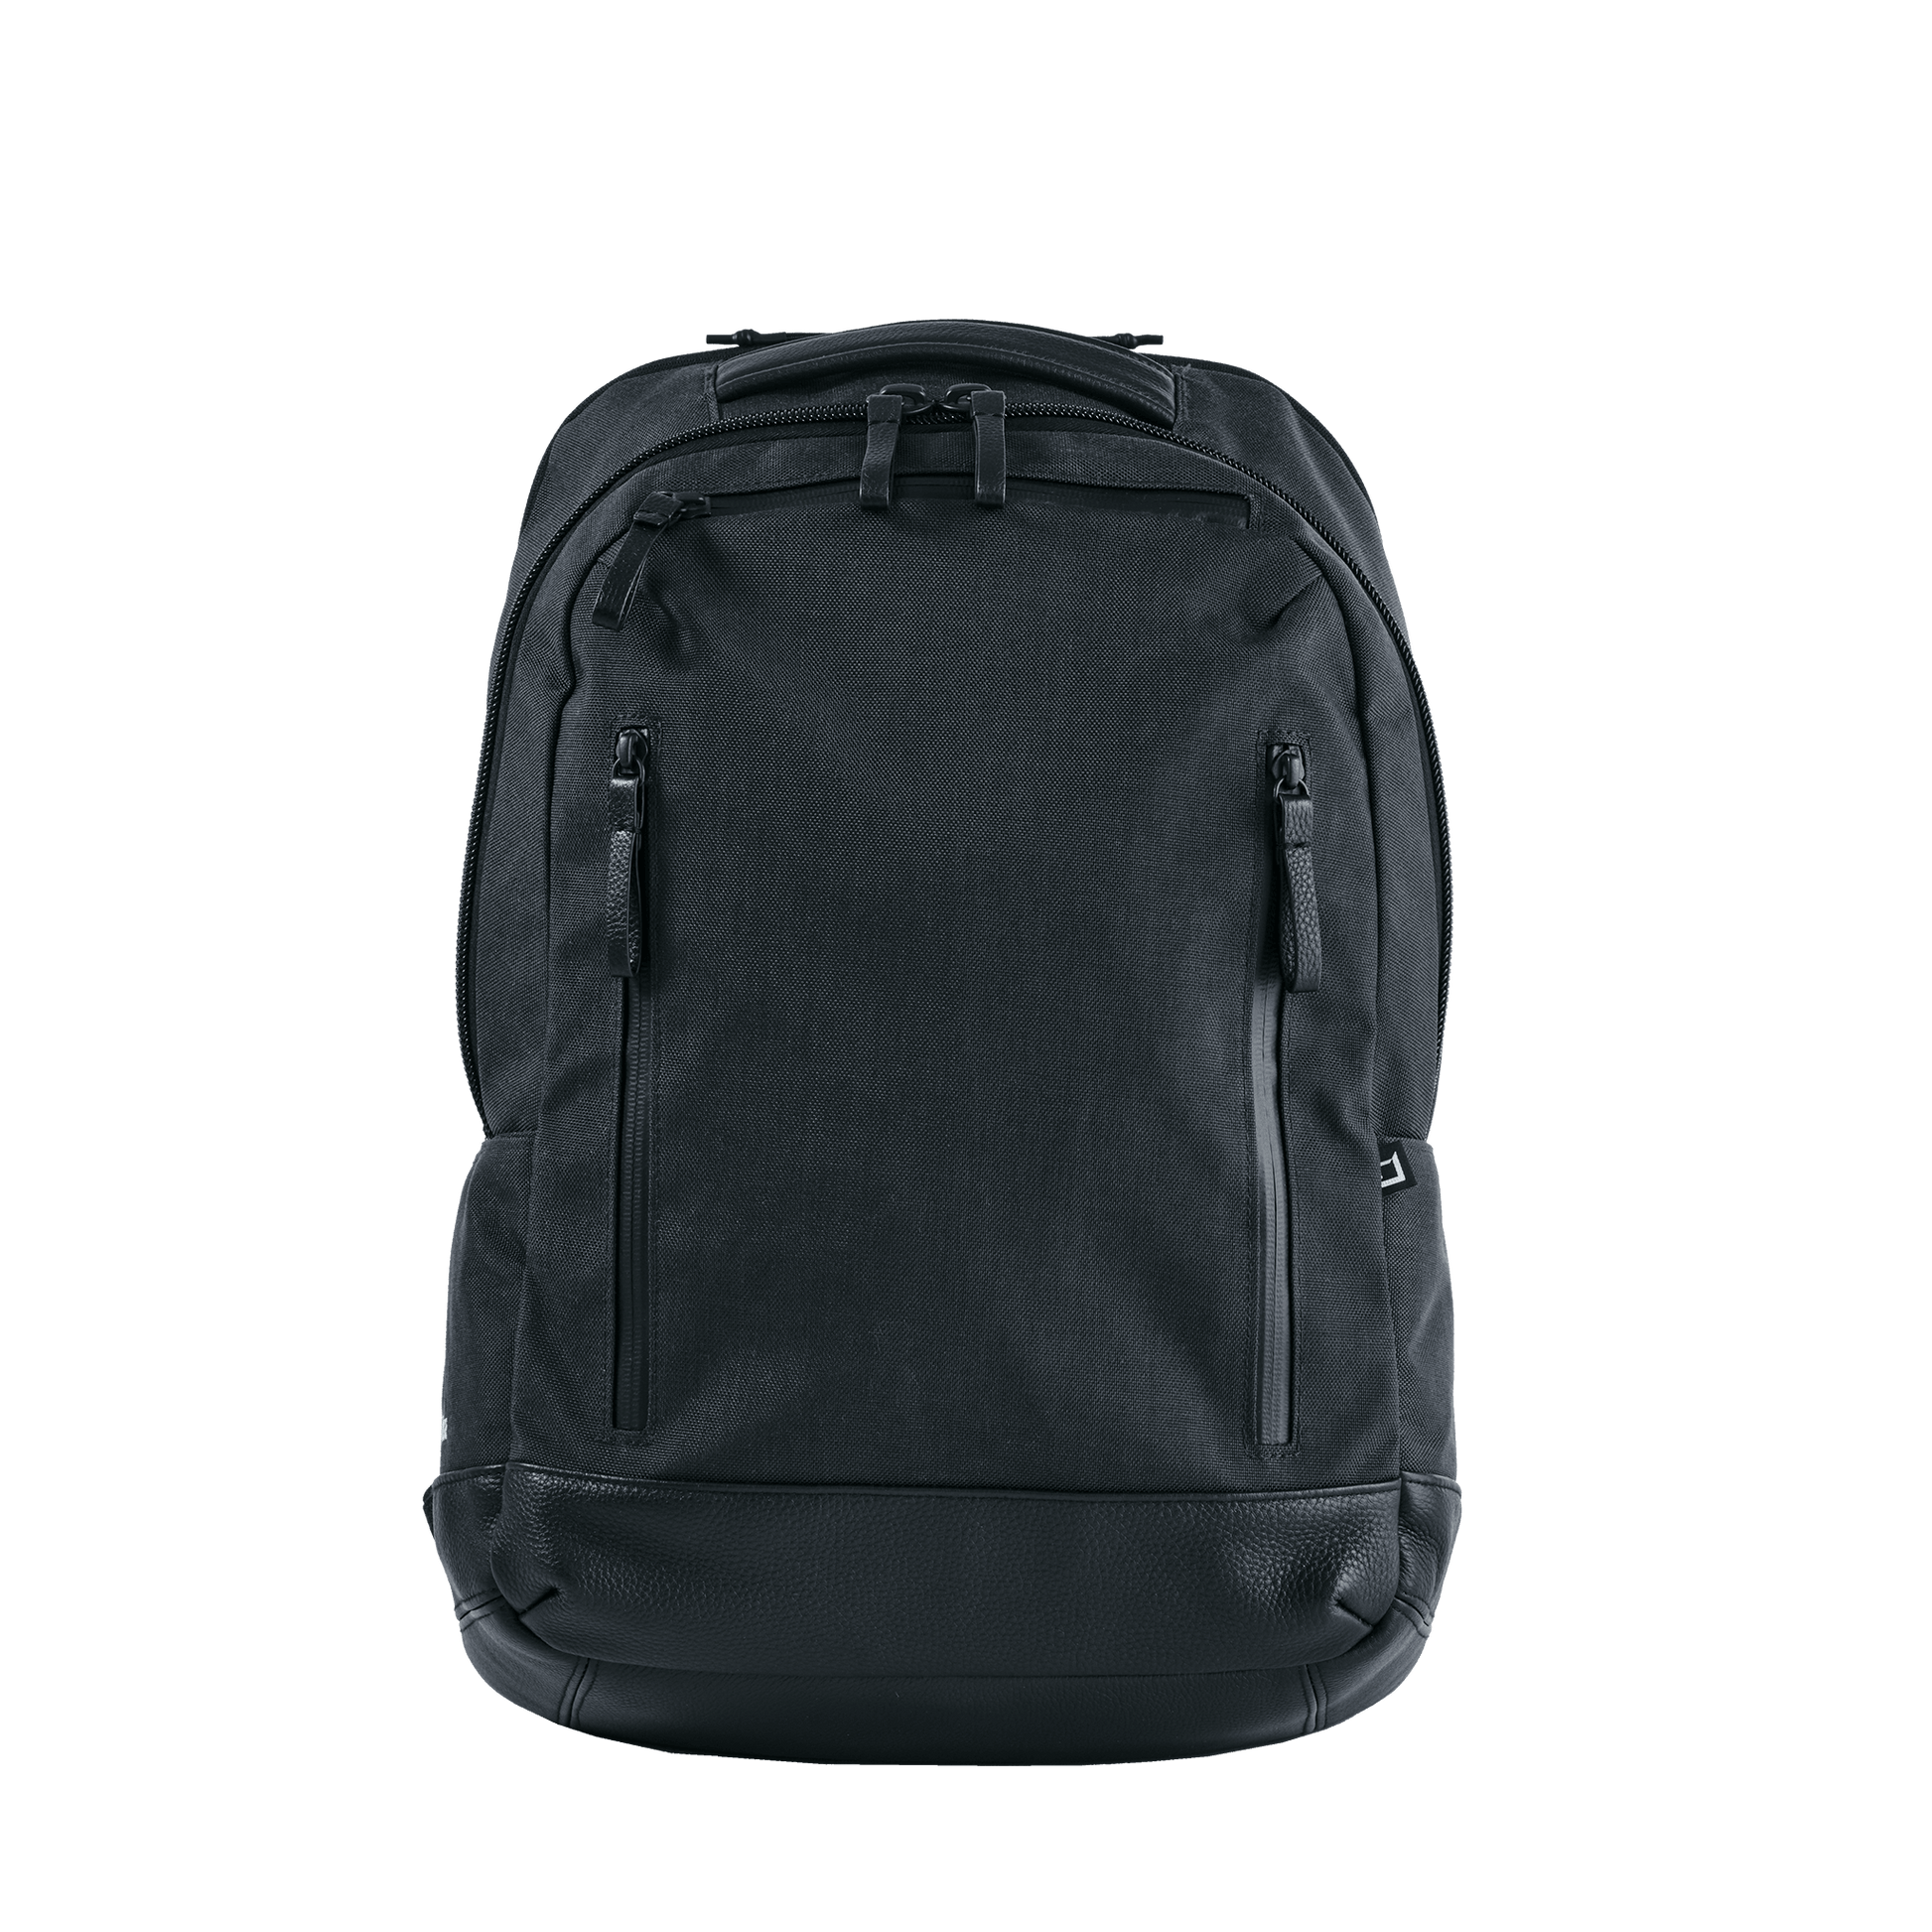 GEX Backpack L - WHITEÂGE